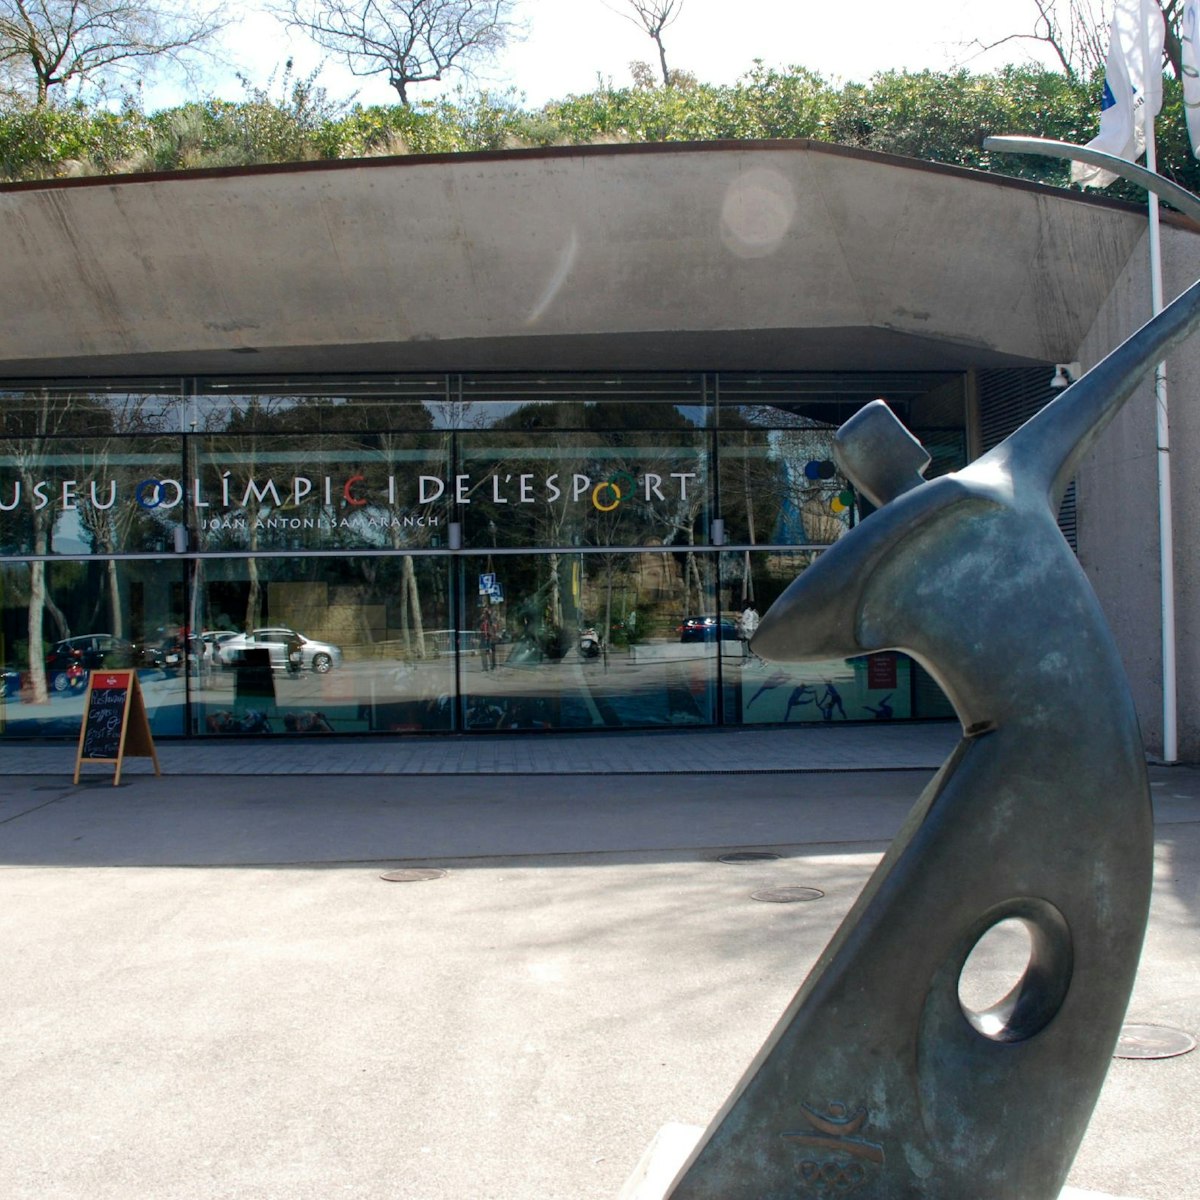 Exterior of Museu Olímpic i de l'Esport